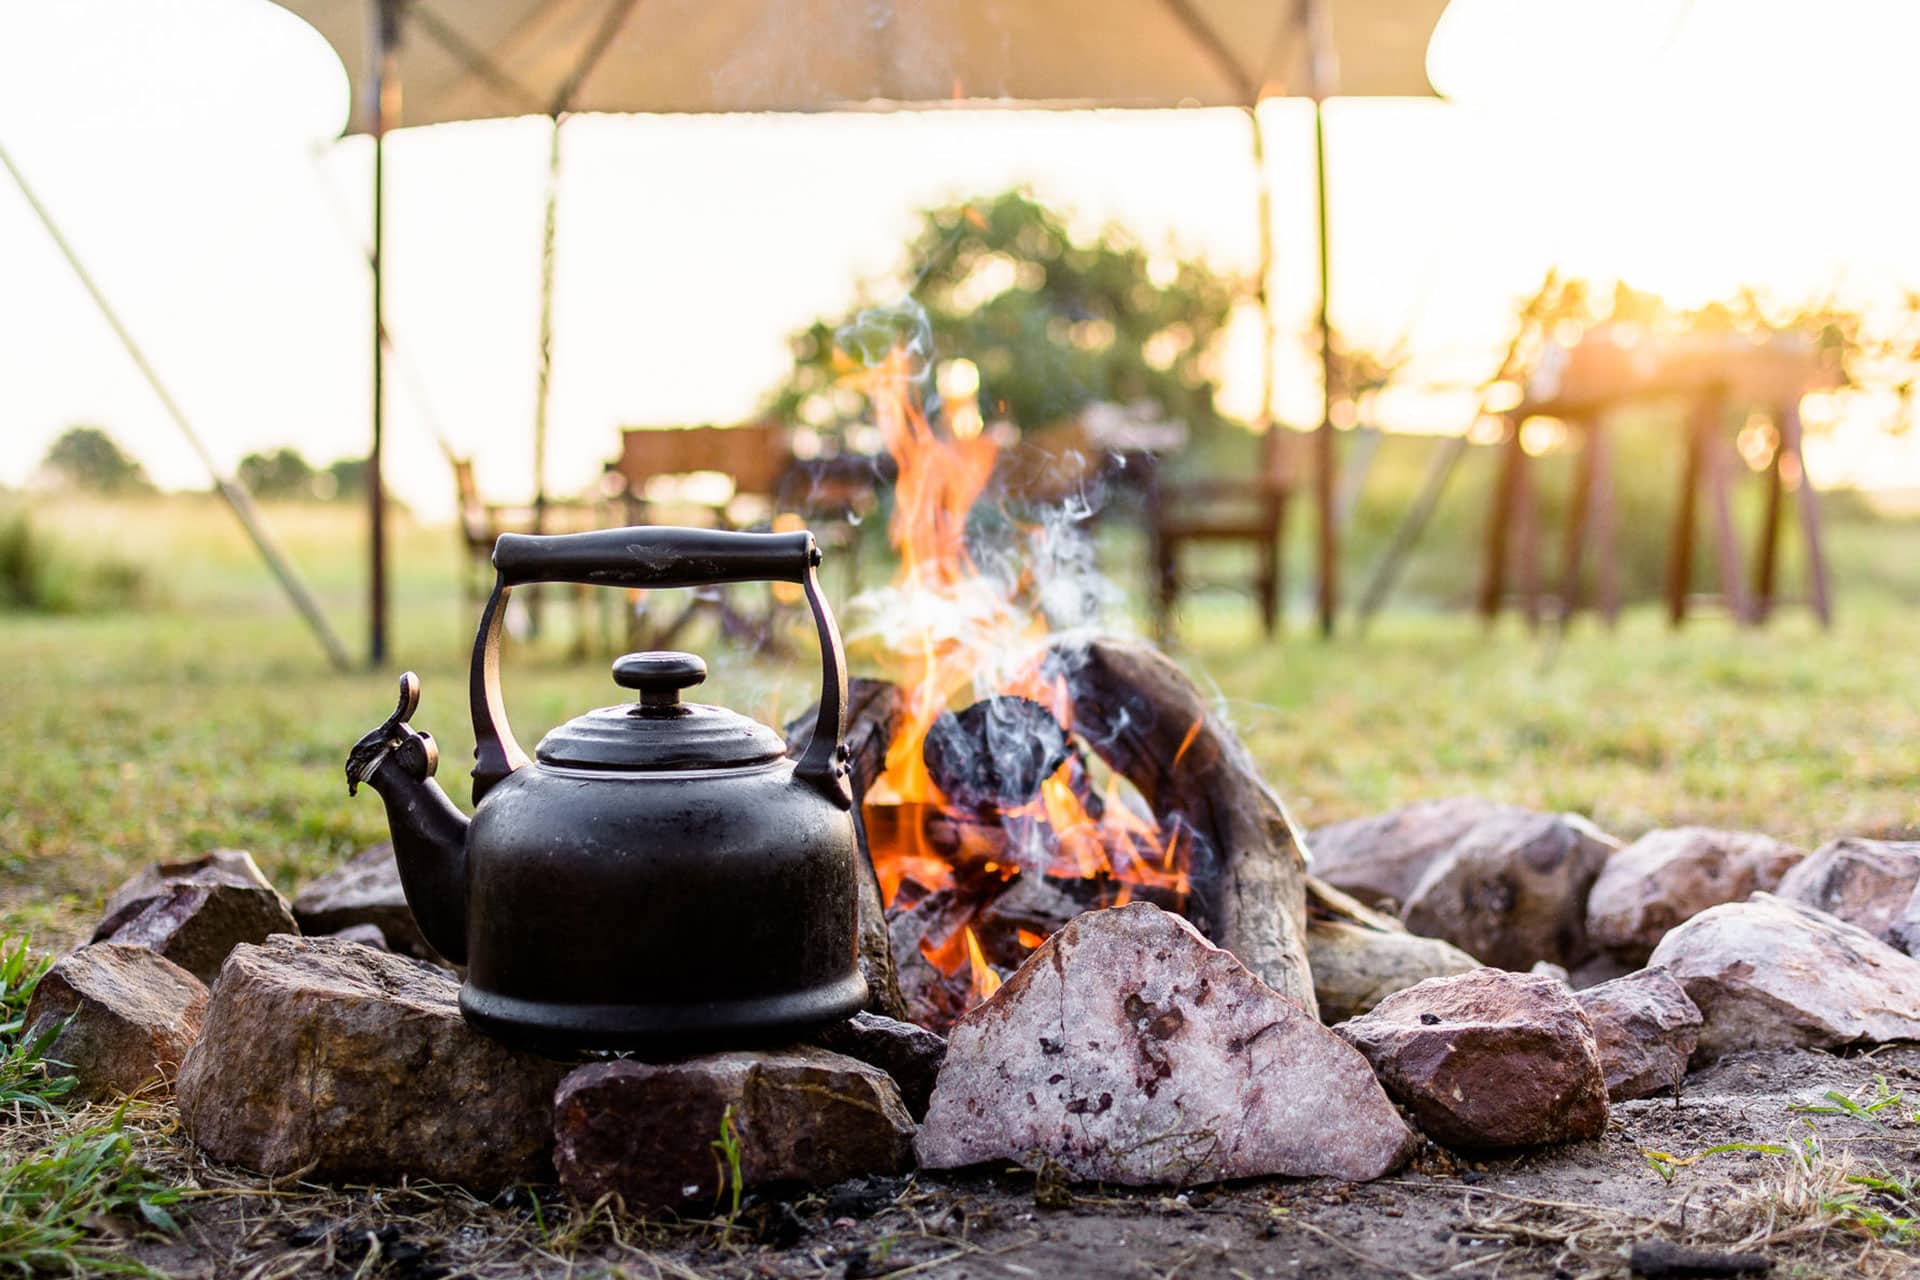 Tea Kettle near an open fire